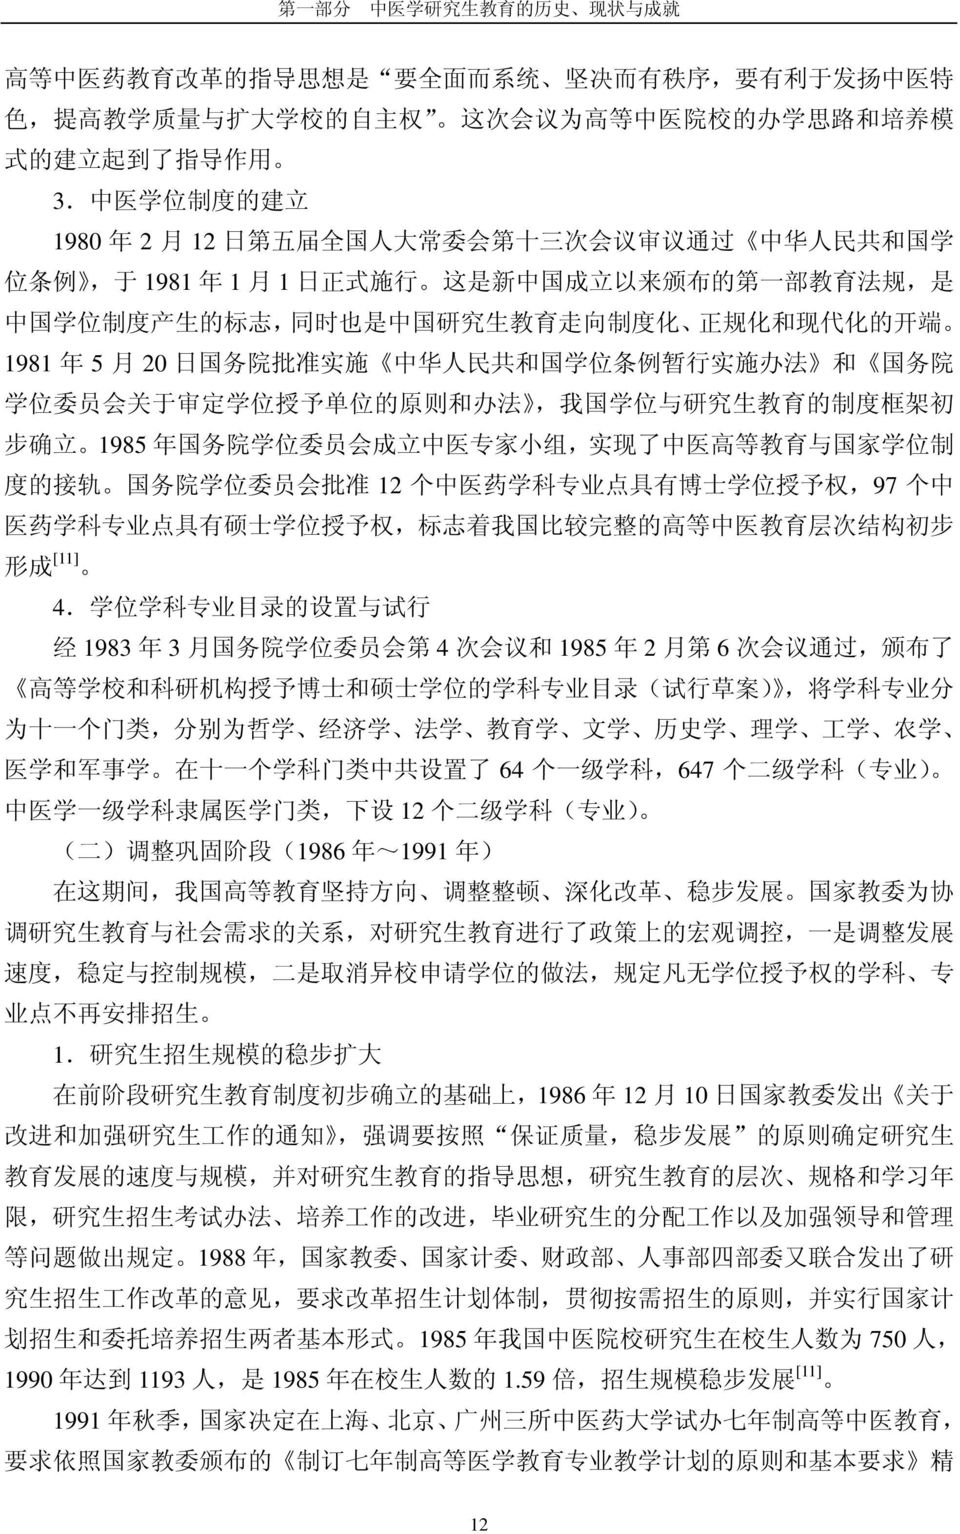 中 医 学 位 制 度 的 建 立 1980 年 2 月 12 日 第 五 届 全 国 人 大 常 委 会 第 十 三 次 会 议 审 议 通 过 中 华 人 民 共 和 国 学 位 条 例, 于 1981 年 1 月 1 日 正 式 施 行 这 是 新 中 国 成 立 以 来 颁 布 的 第 一 部 教 育 法 规, 是 中 国 学 位 制 度 产 生 的 标 志, 同 时 也 是 中 国 研